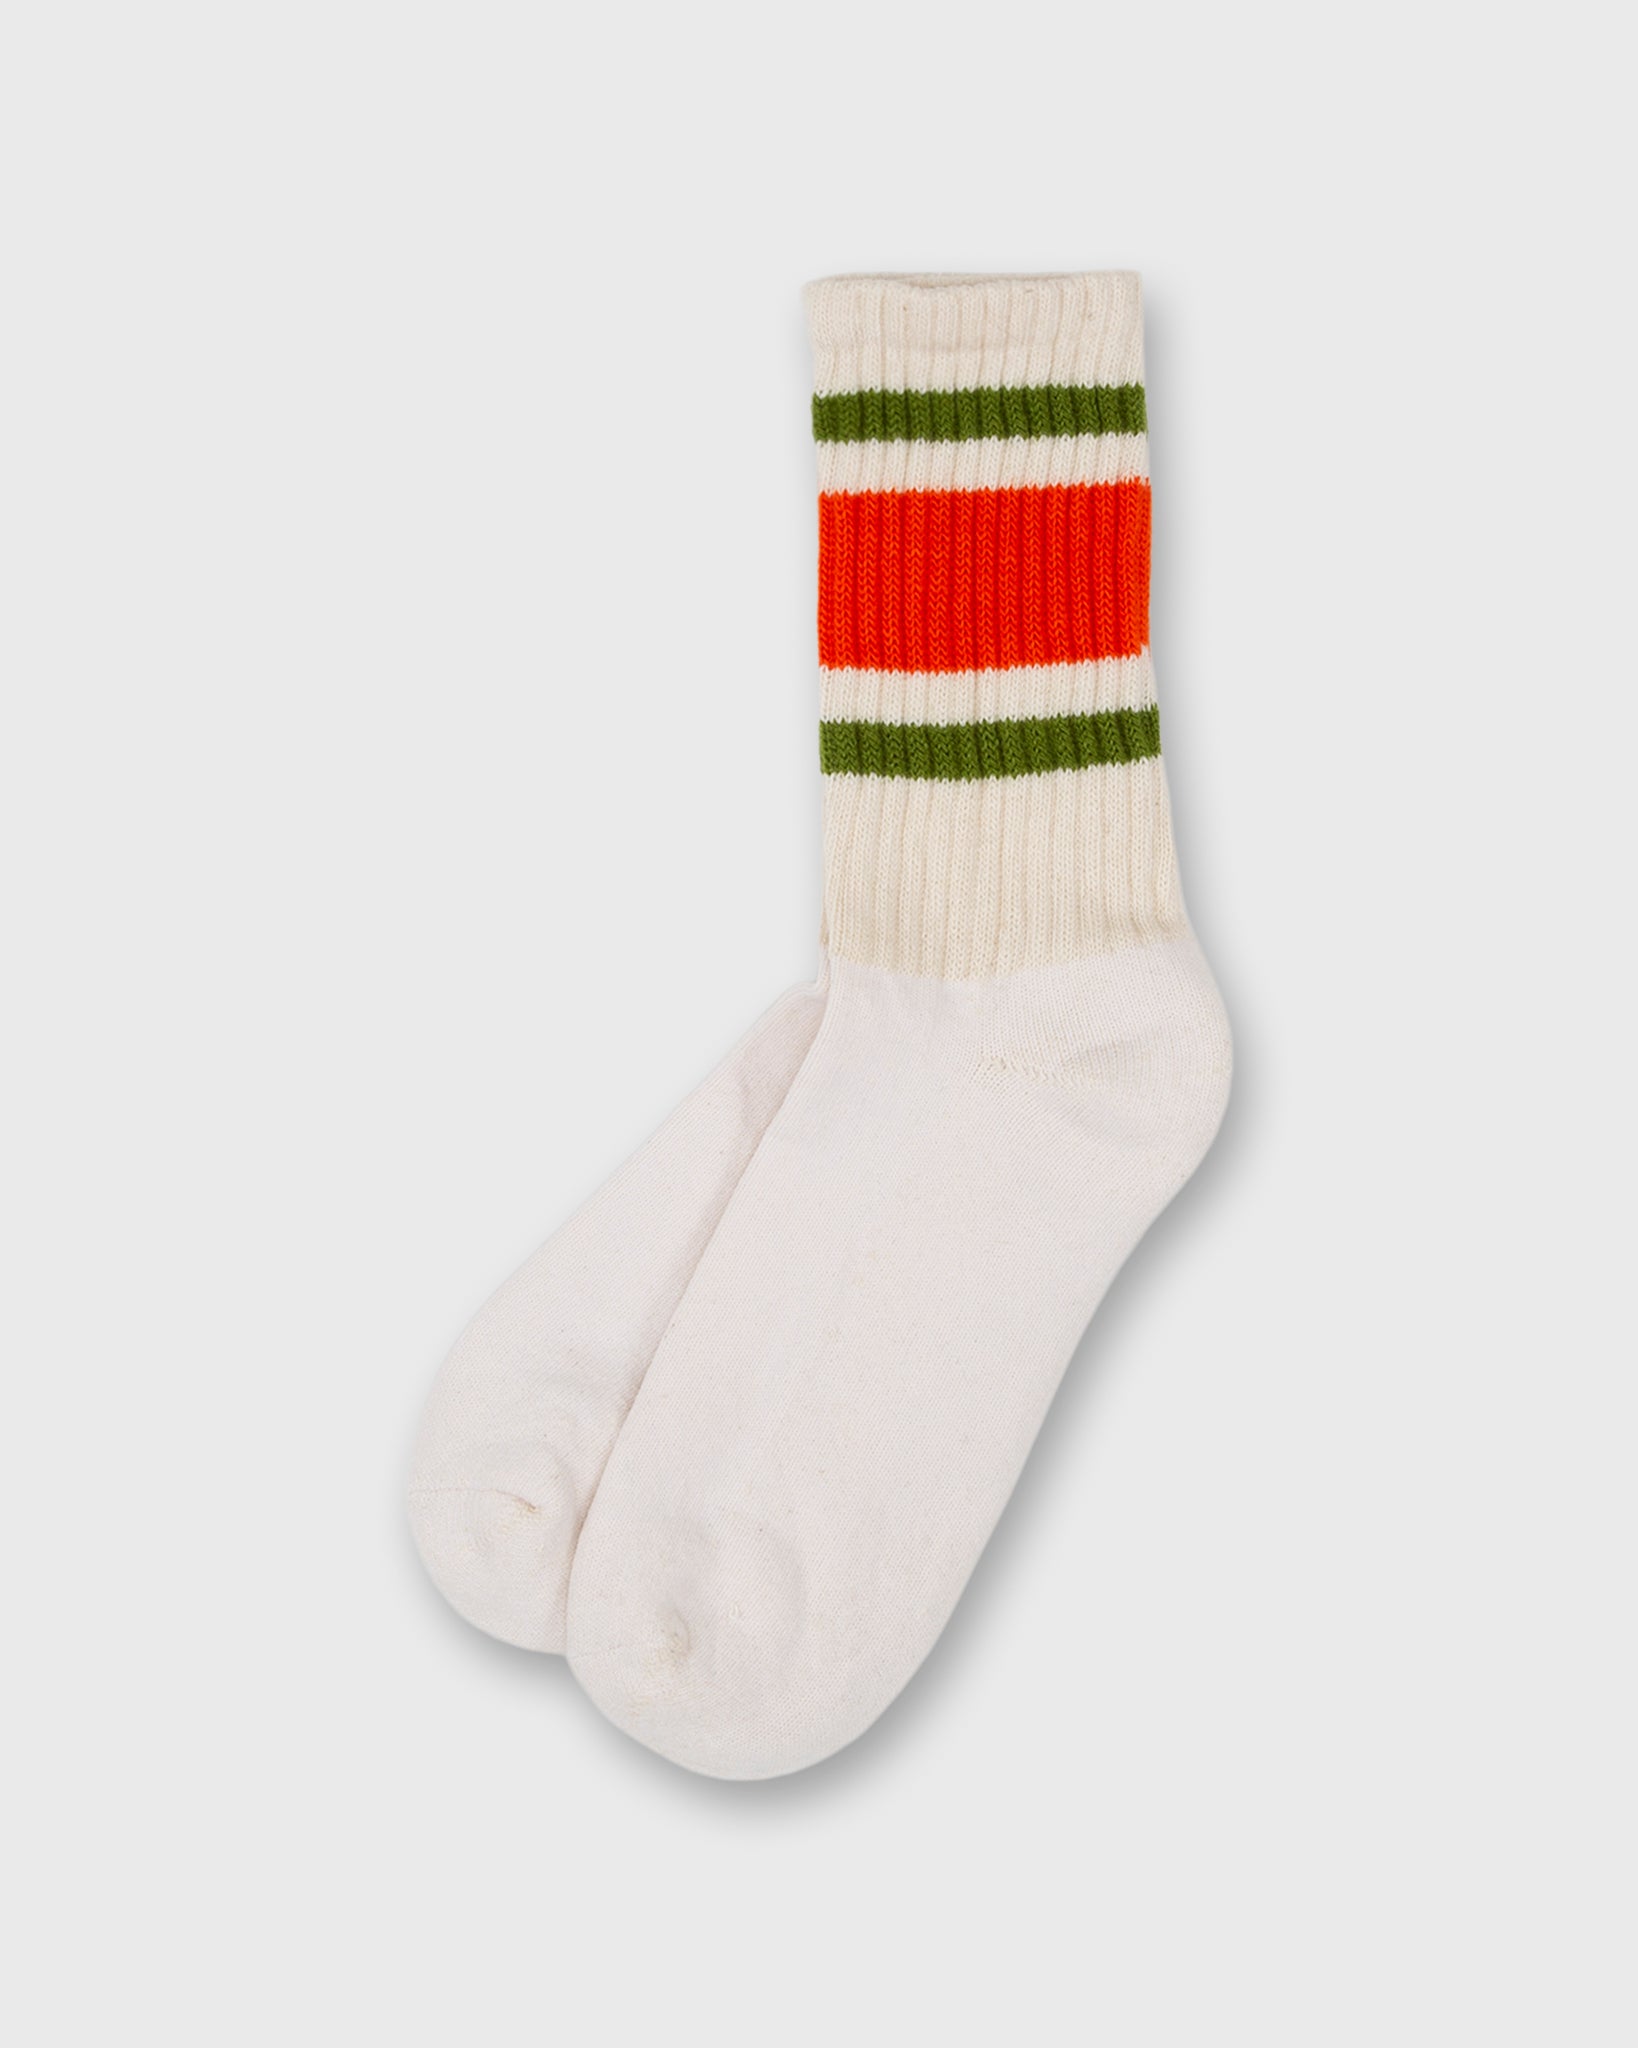 Retro Stripe Socks in Orange/Chive